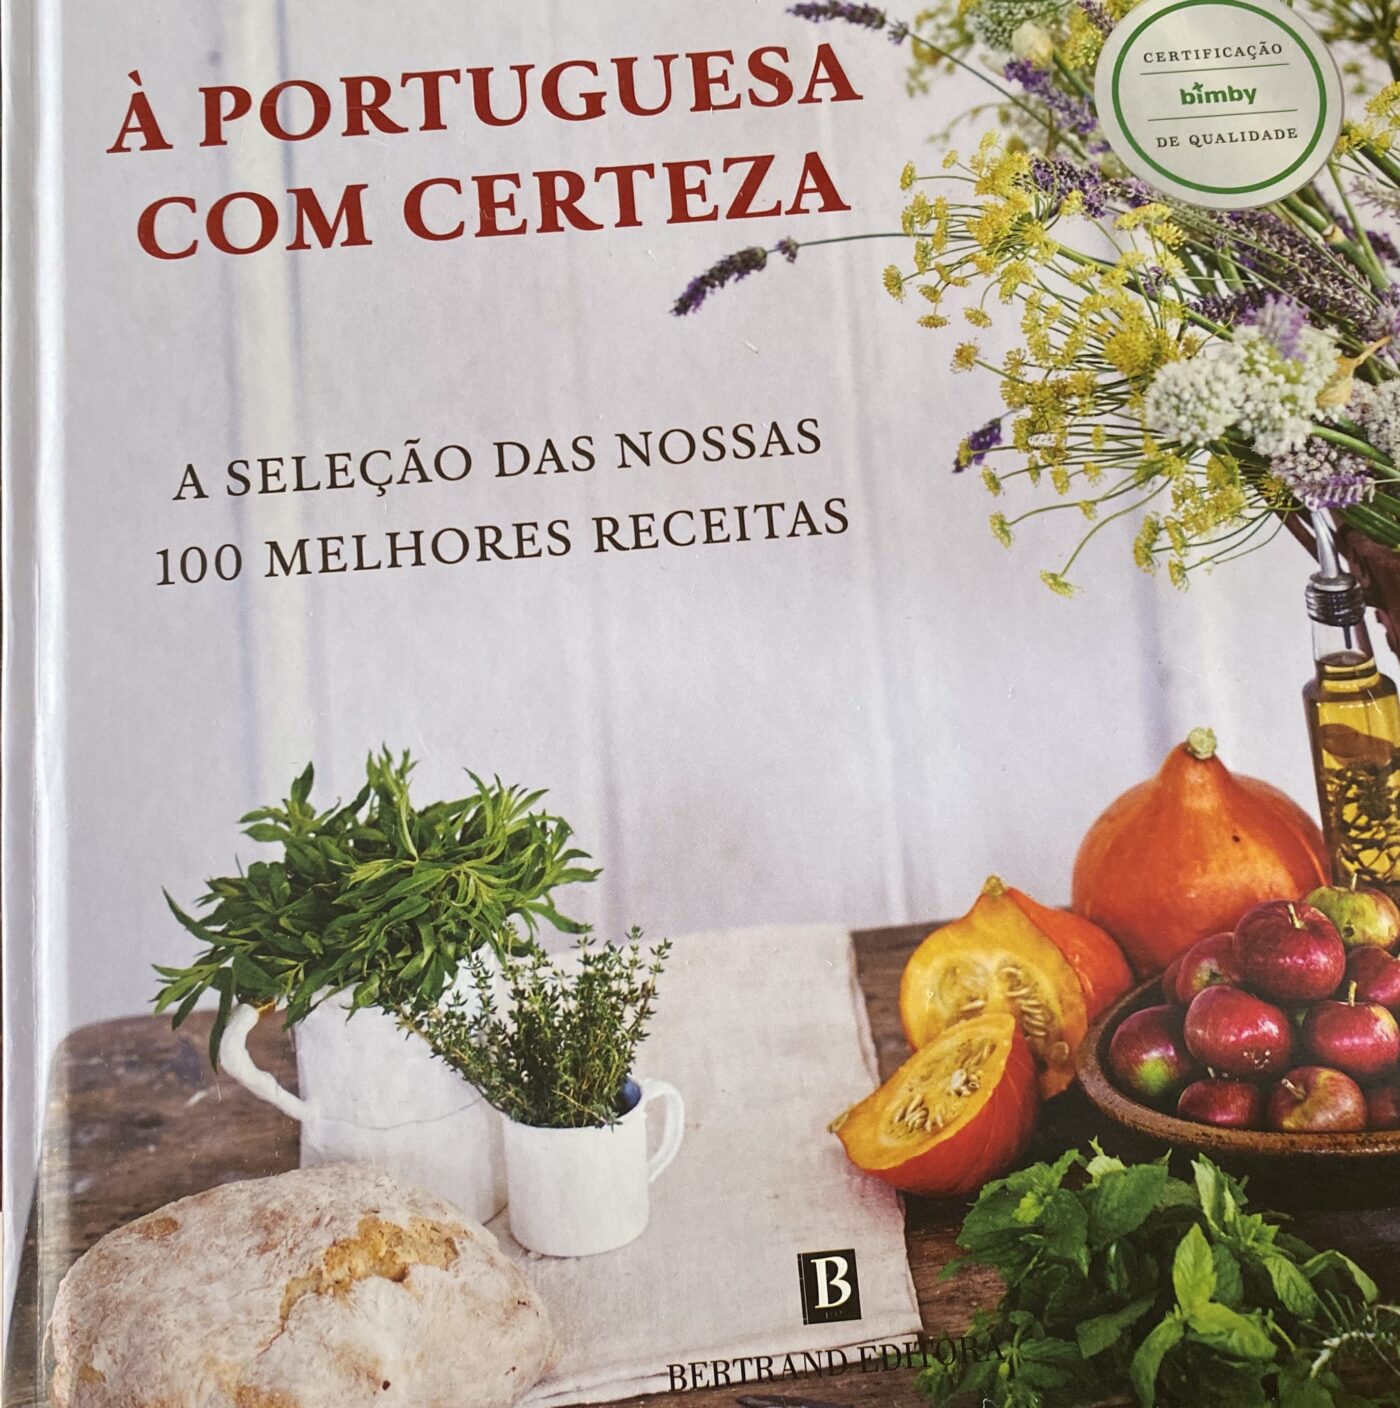 Saudosismo português: A comida da “terrinha"- nossa gastronomia